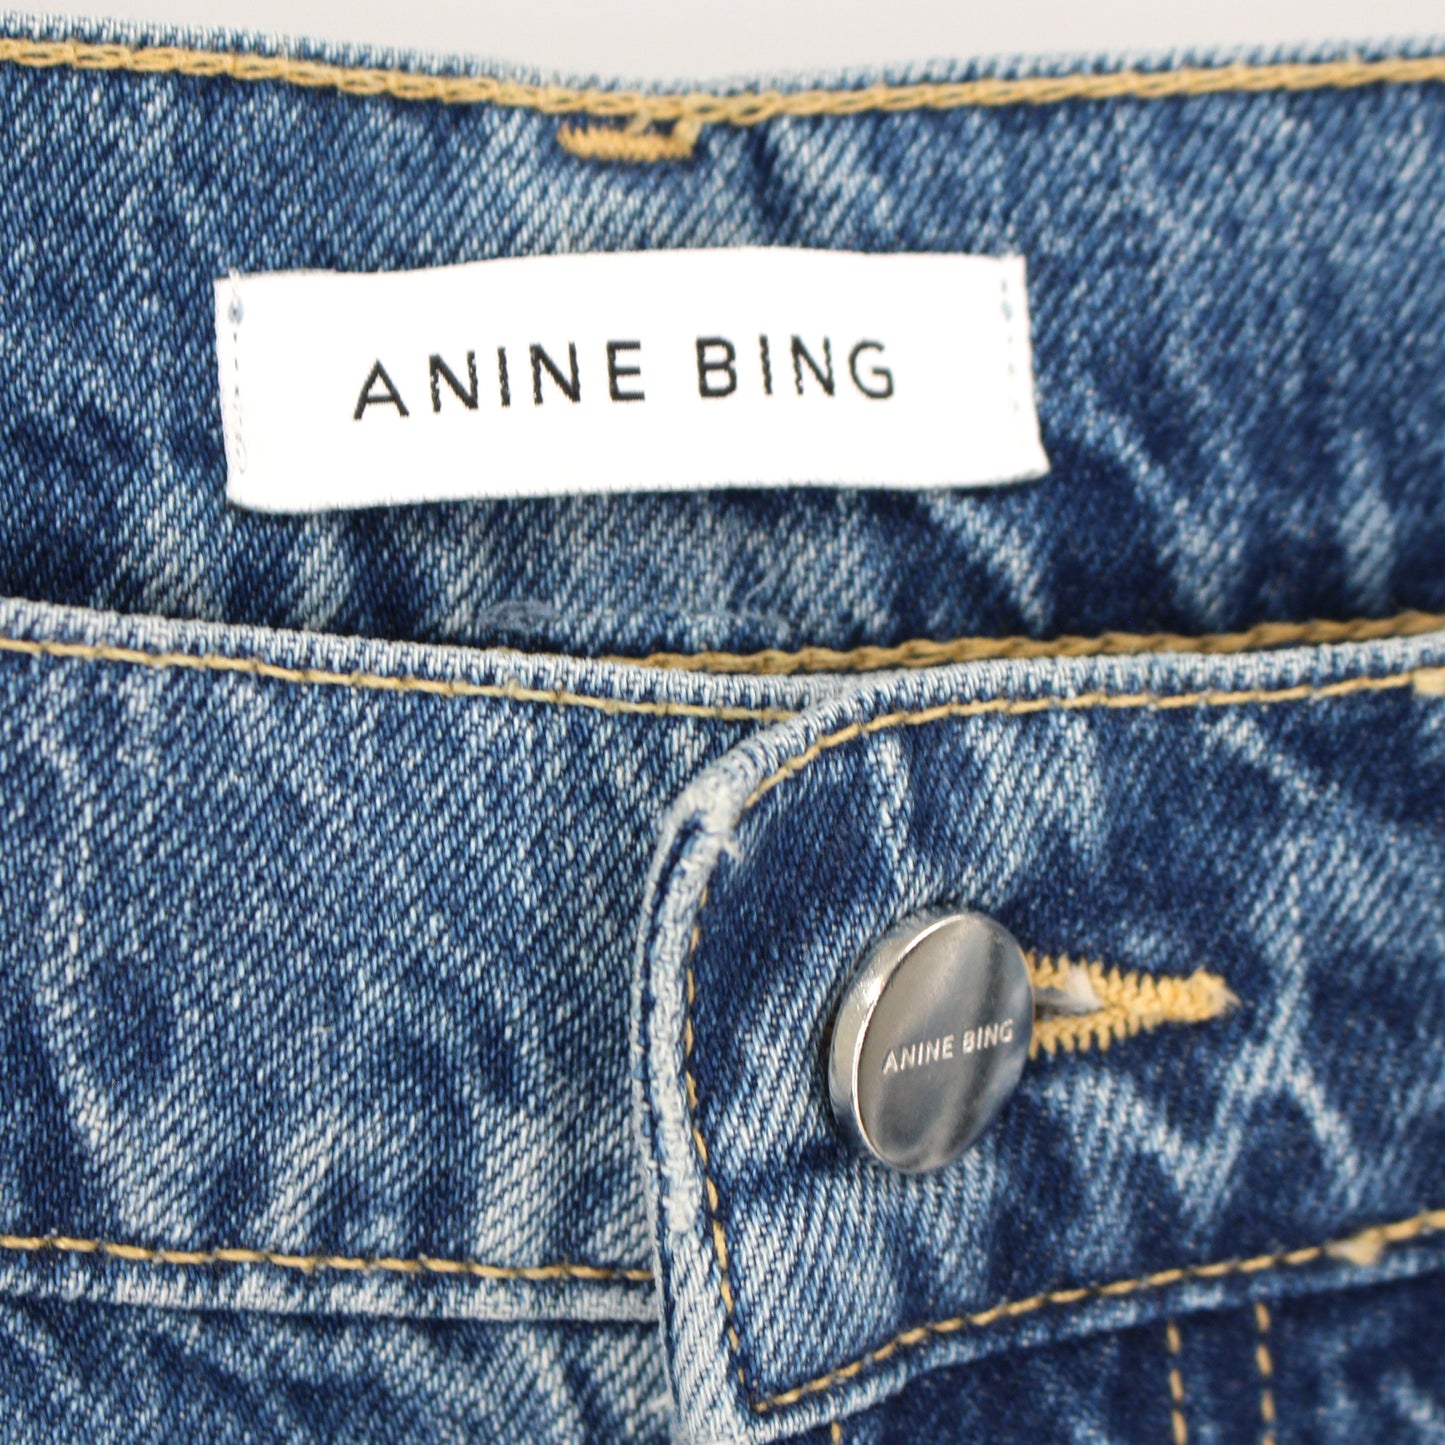 Anine Bing Bryn Effie Boot Cut Jeans